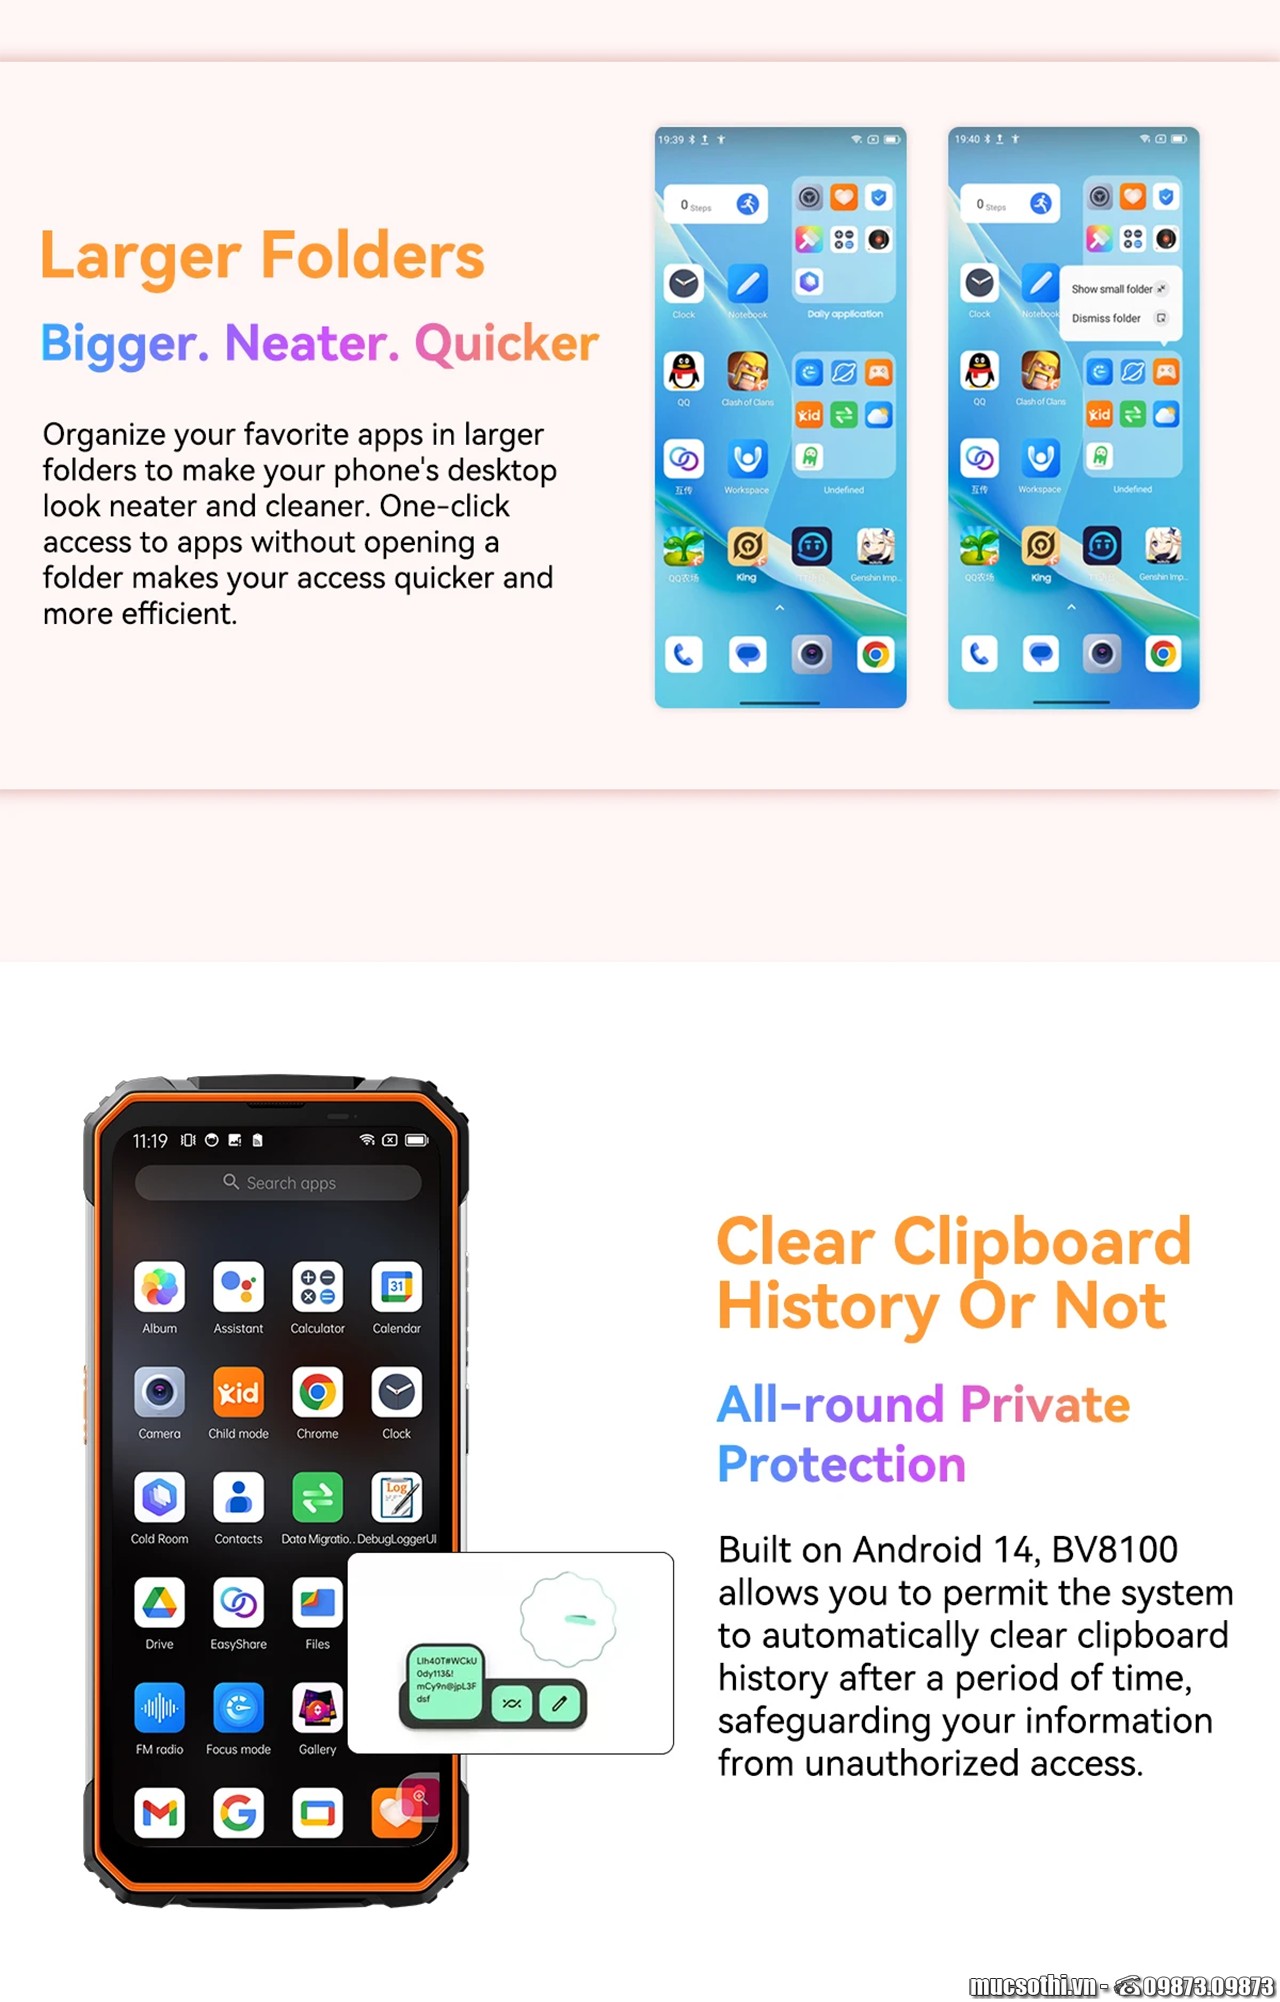 Smartphone Sờ To - Bán lẻ giá sỉ online giá tốt điện thoại Blackview BV8100 chính hãng - 09175.09195